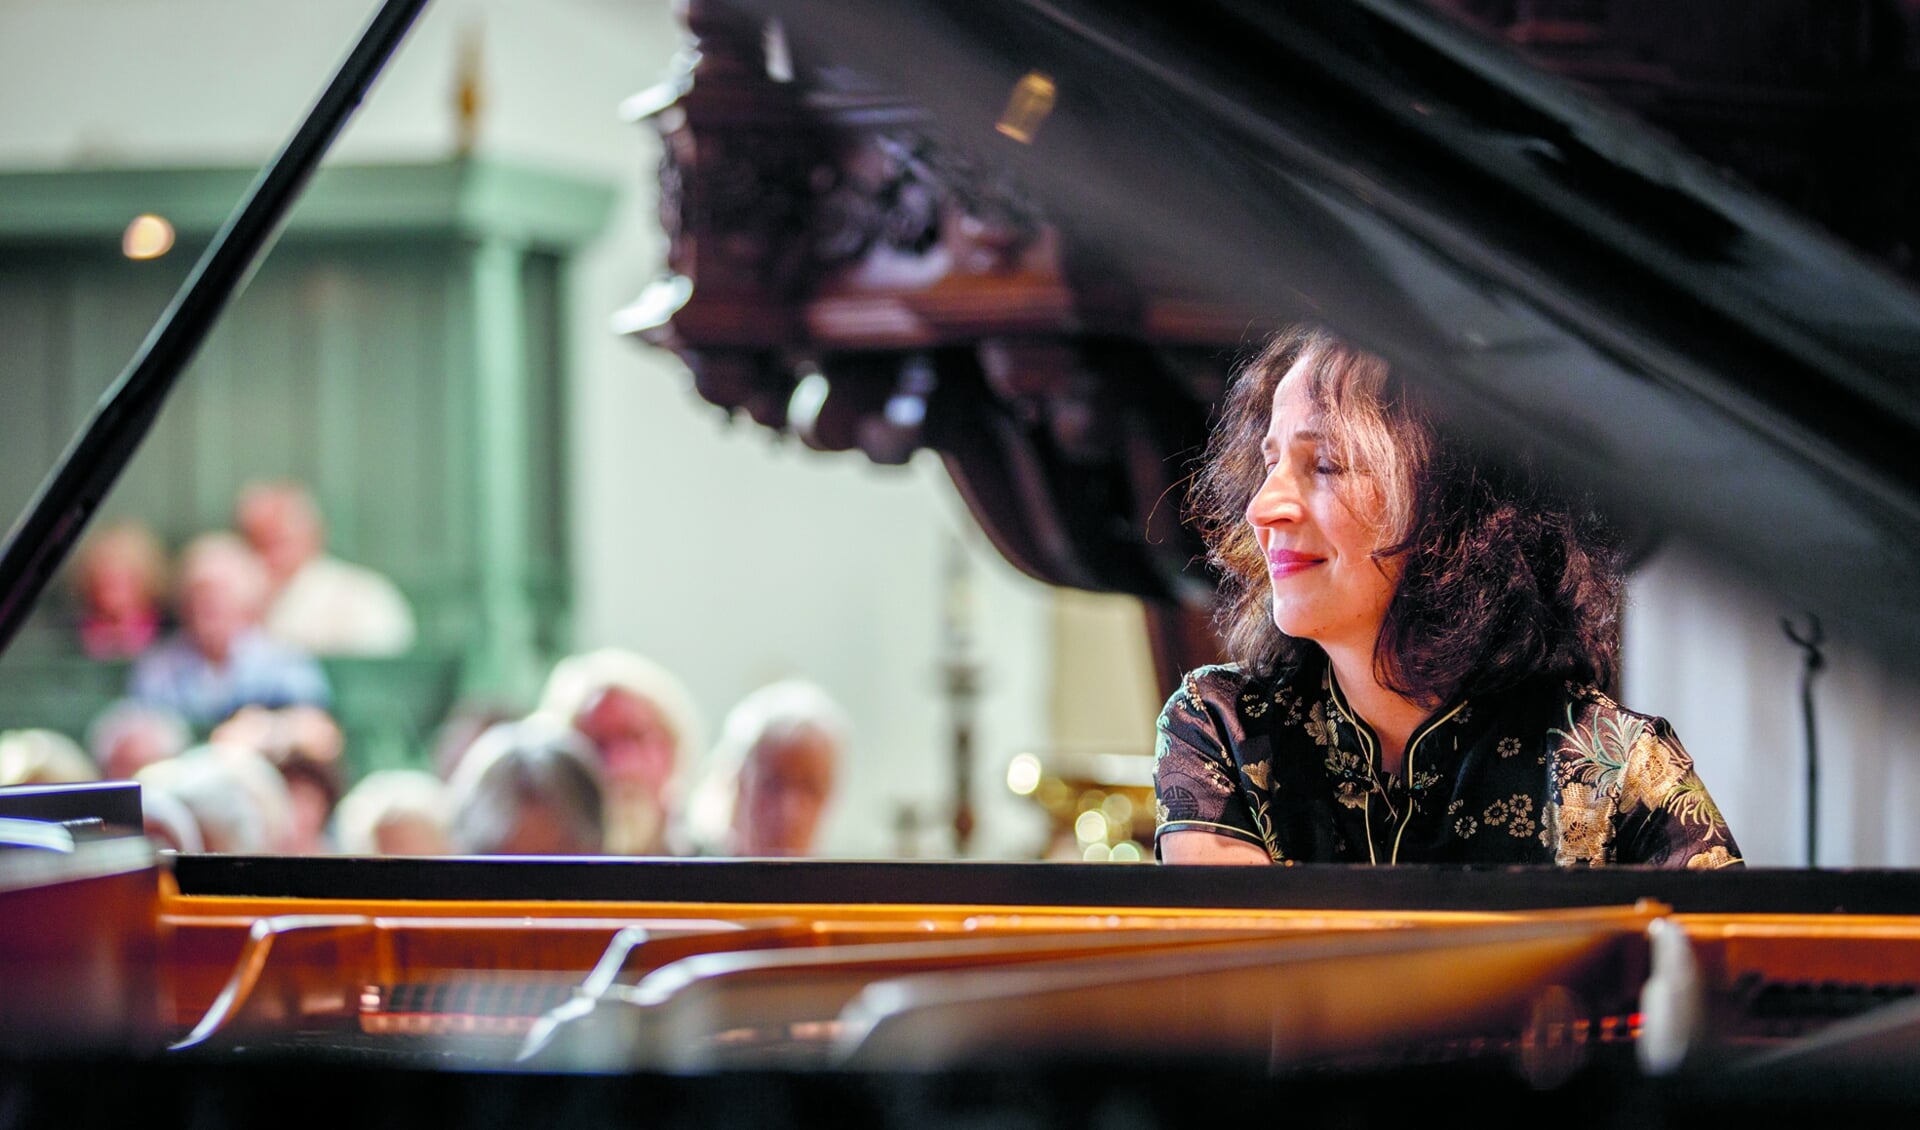 Meesterpianiste Marietta Petkova komt spelen bij Goede Rede Concerten. (Foto: Claudia Kamergorodski)